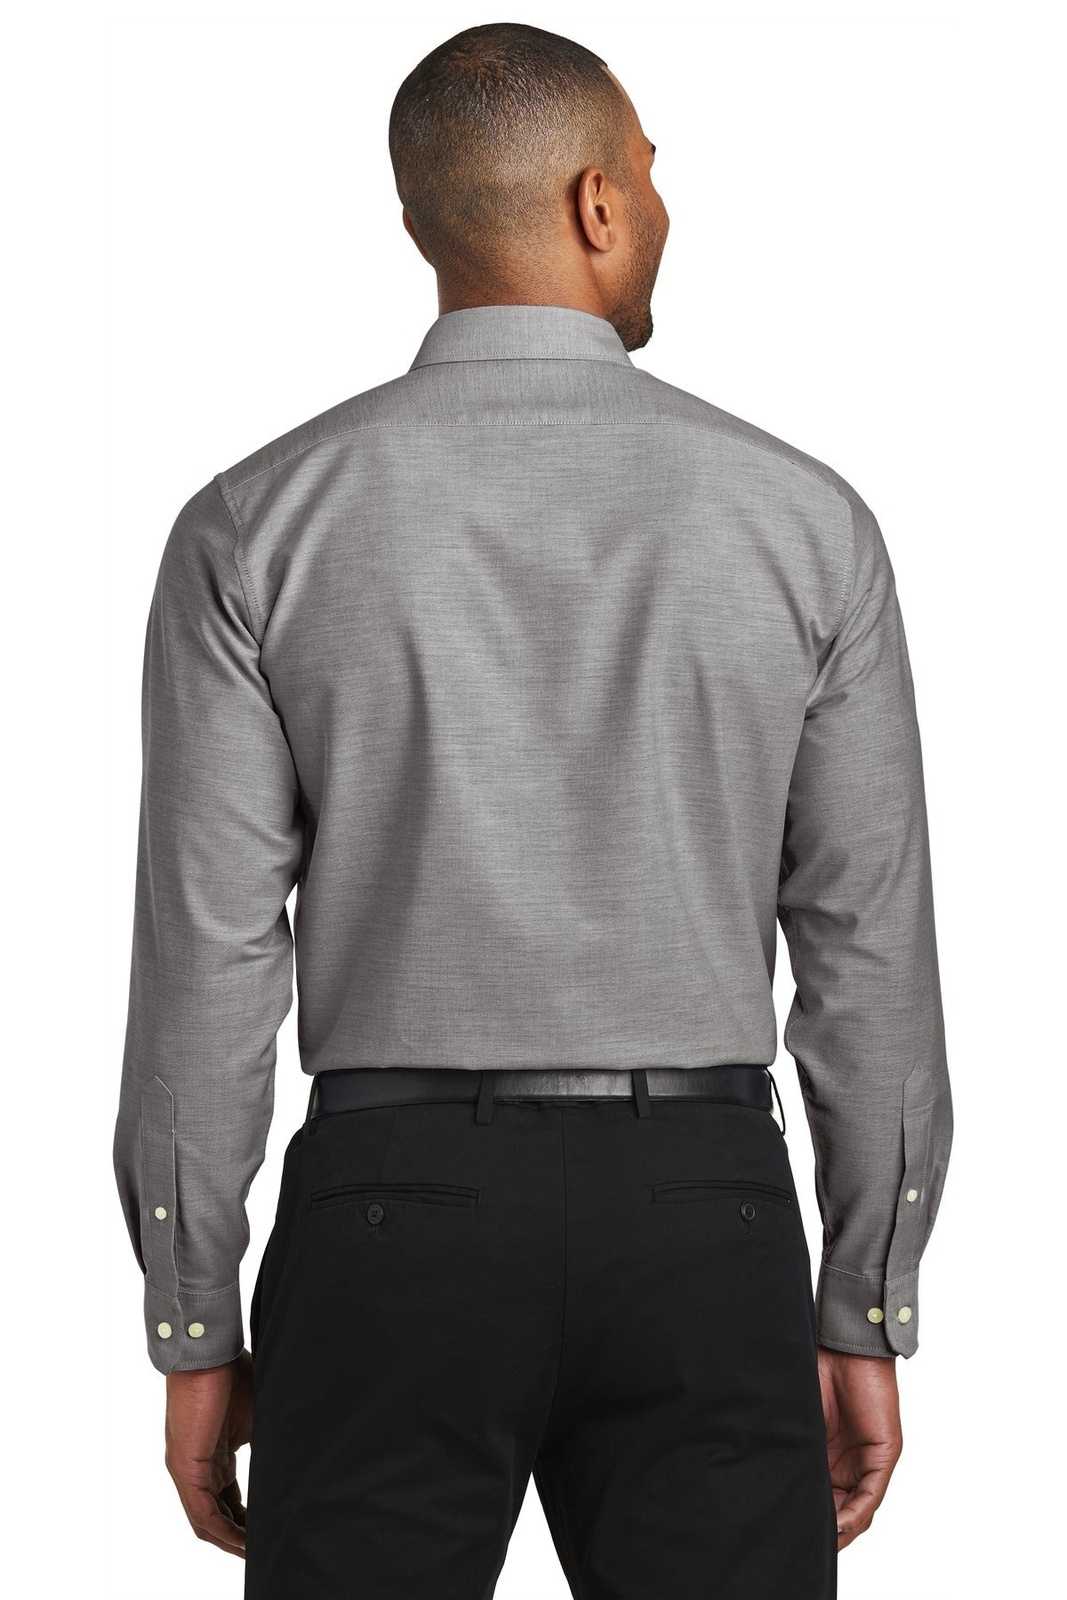 Port Authority S661 Slim Fit Superpro Oxford Shirt - Black - HIT a Double - 1